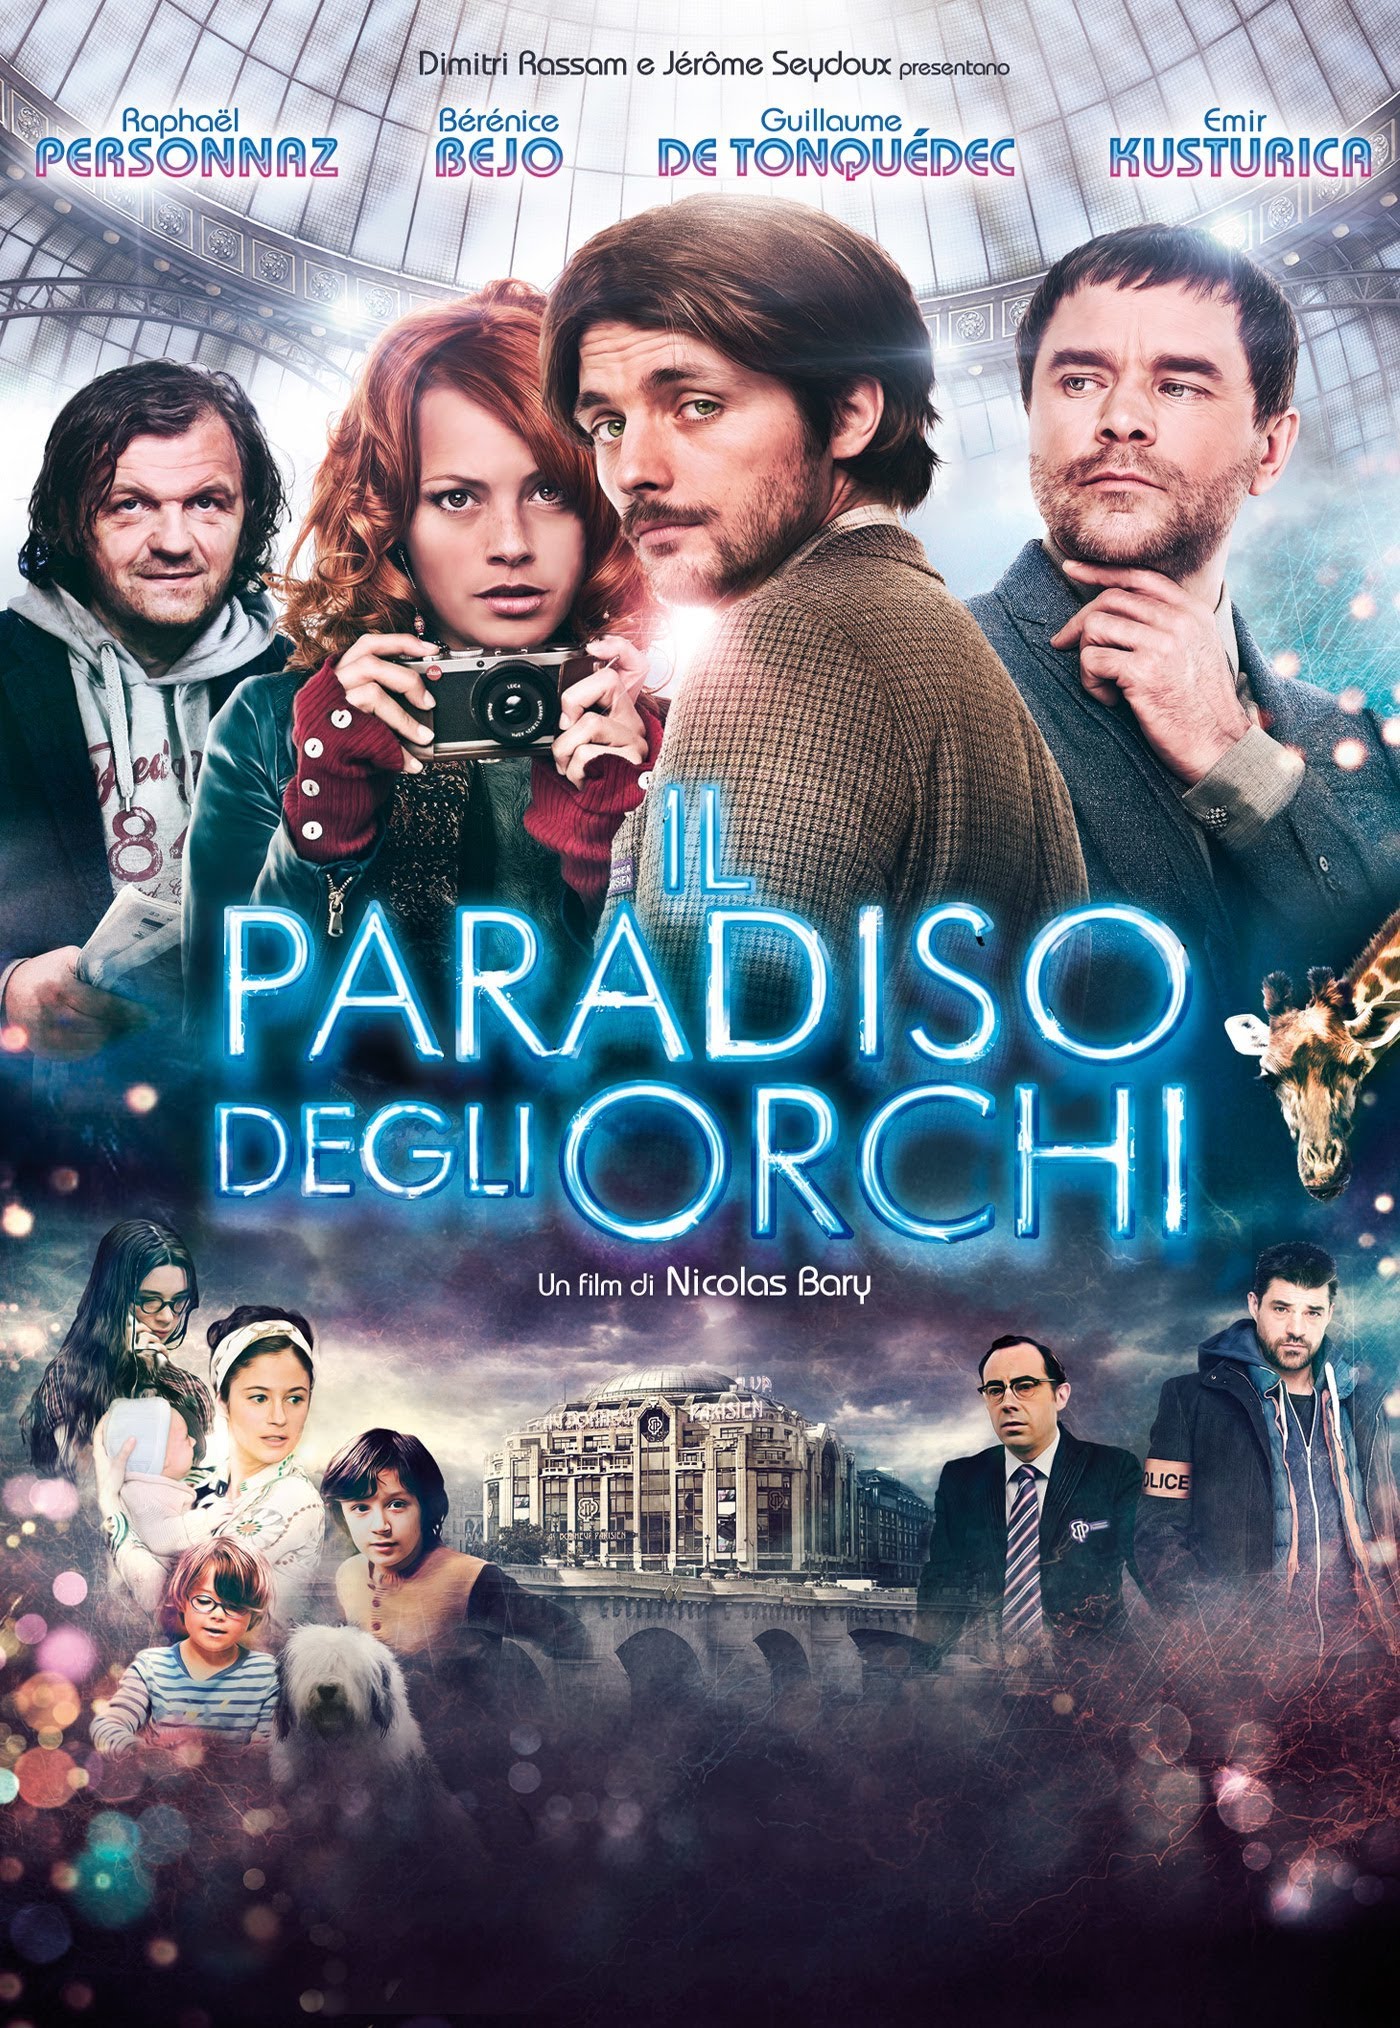 Il paradiso degli orchi [HD] (2013)